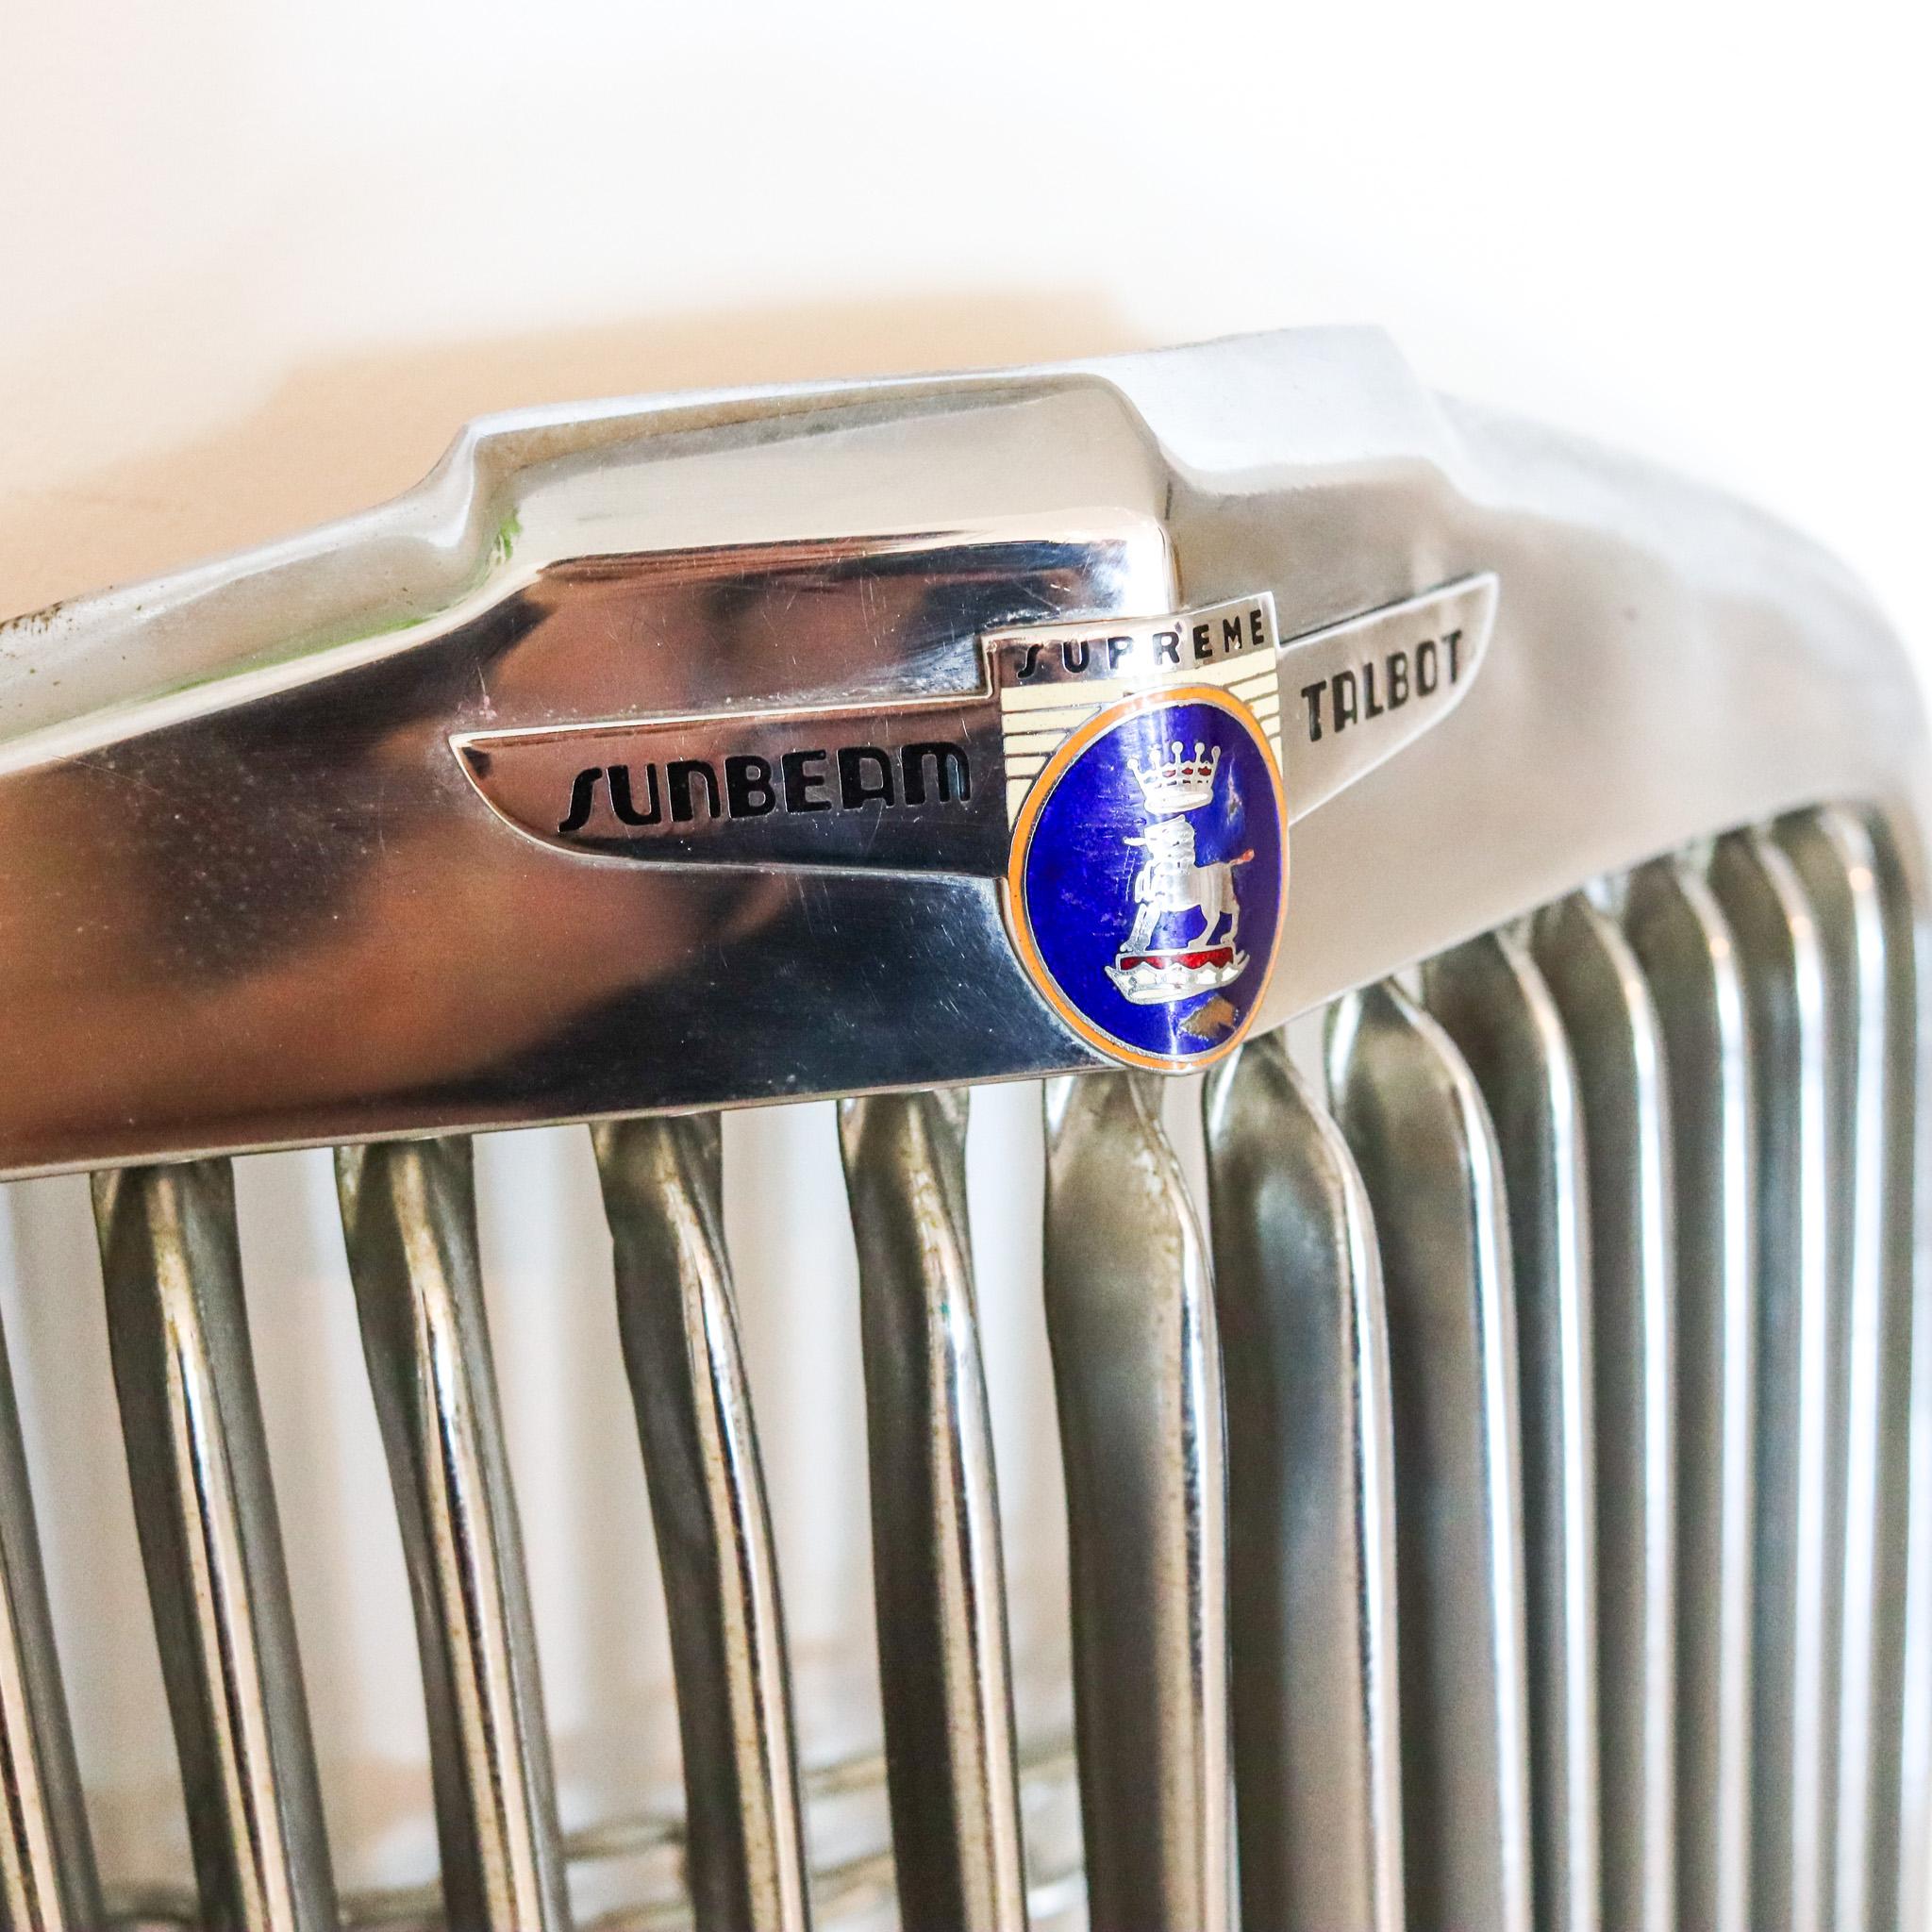 Kühlerabdeckung aus einem Sunbeam Supreme Talbot von 1947.

Seltenes und sehr dekoratives Stück aus der amerikanischen Retro-Zeit. Dies ist eine Kühlerabdeckung von der kultigen und beliebten Sunbeam Supreme Talbot Auto zwischen den 1947 und 1953